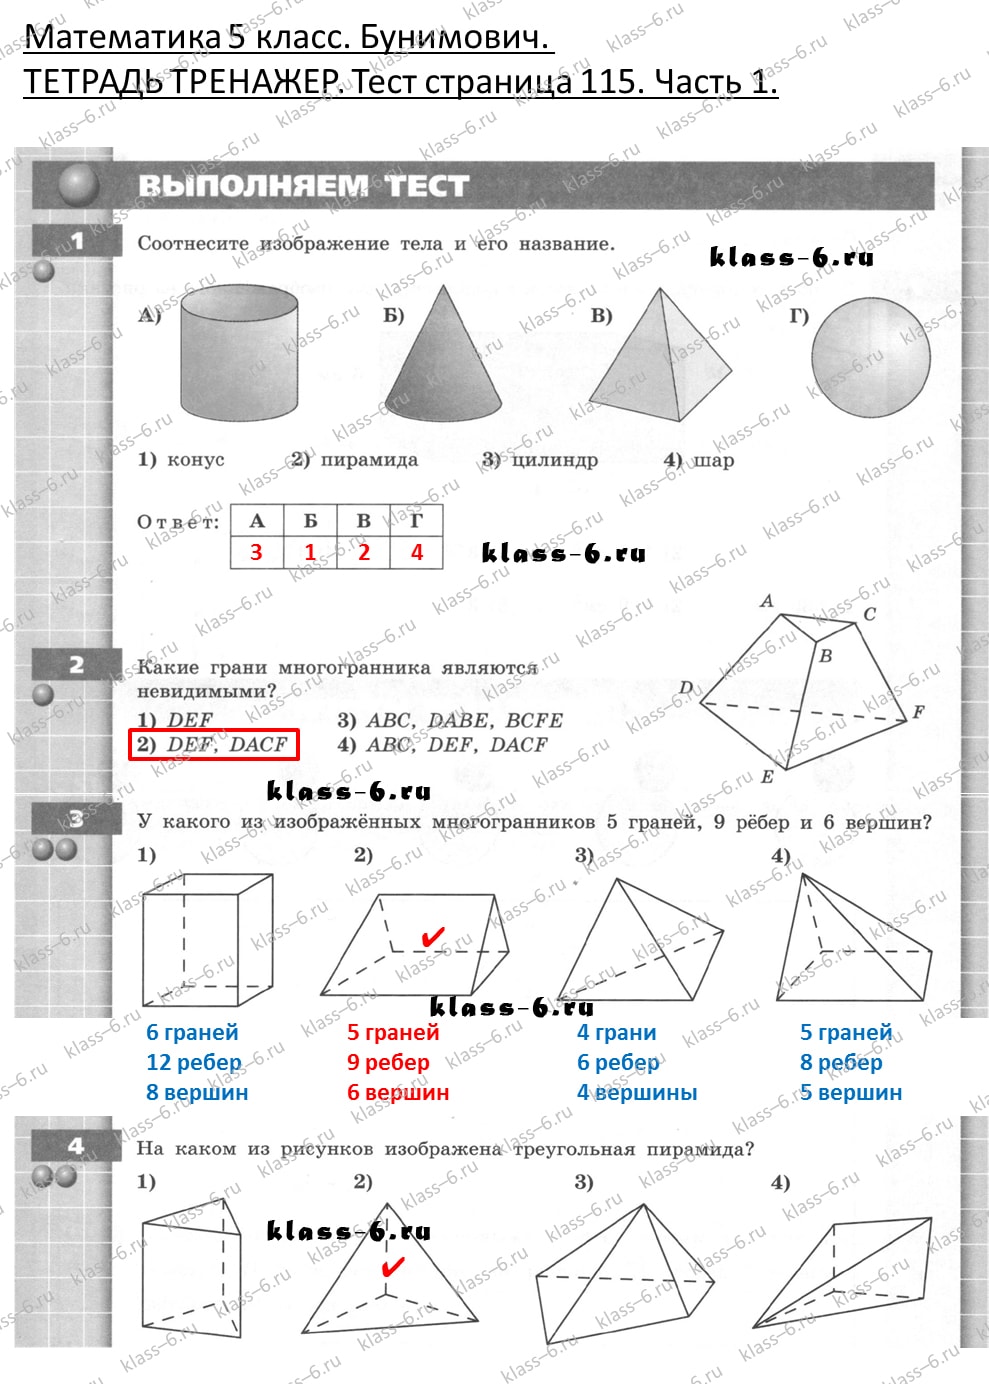 решебник и гдз по математике тетрадь тренажер Бунимович 5 класс тесты страница 115 (1)